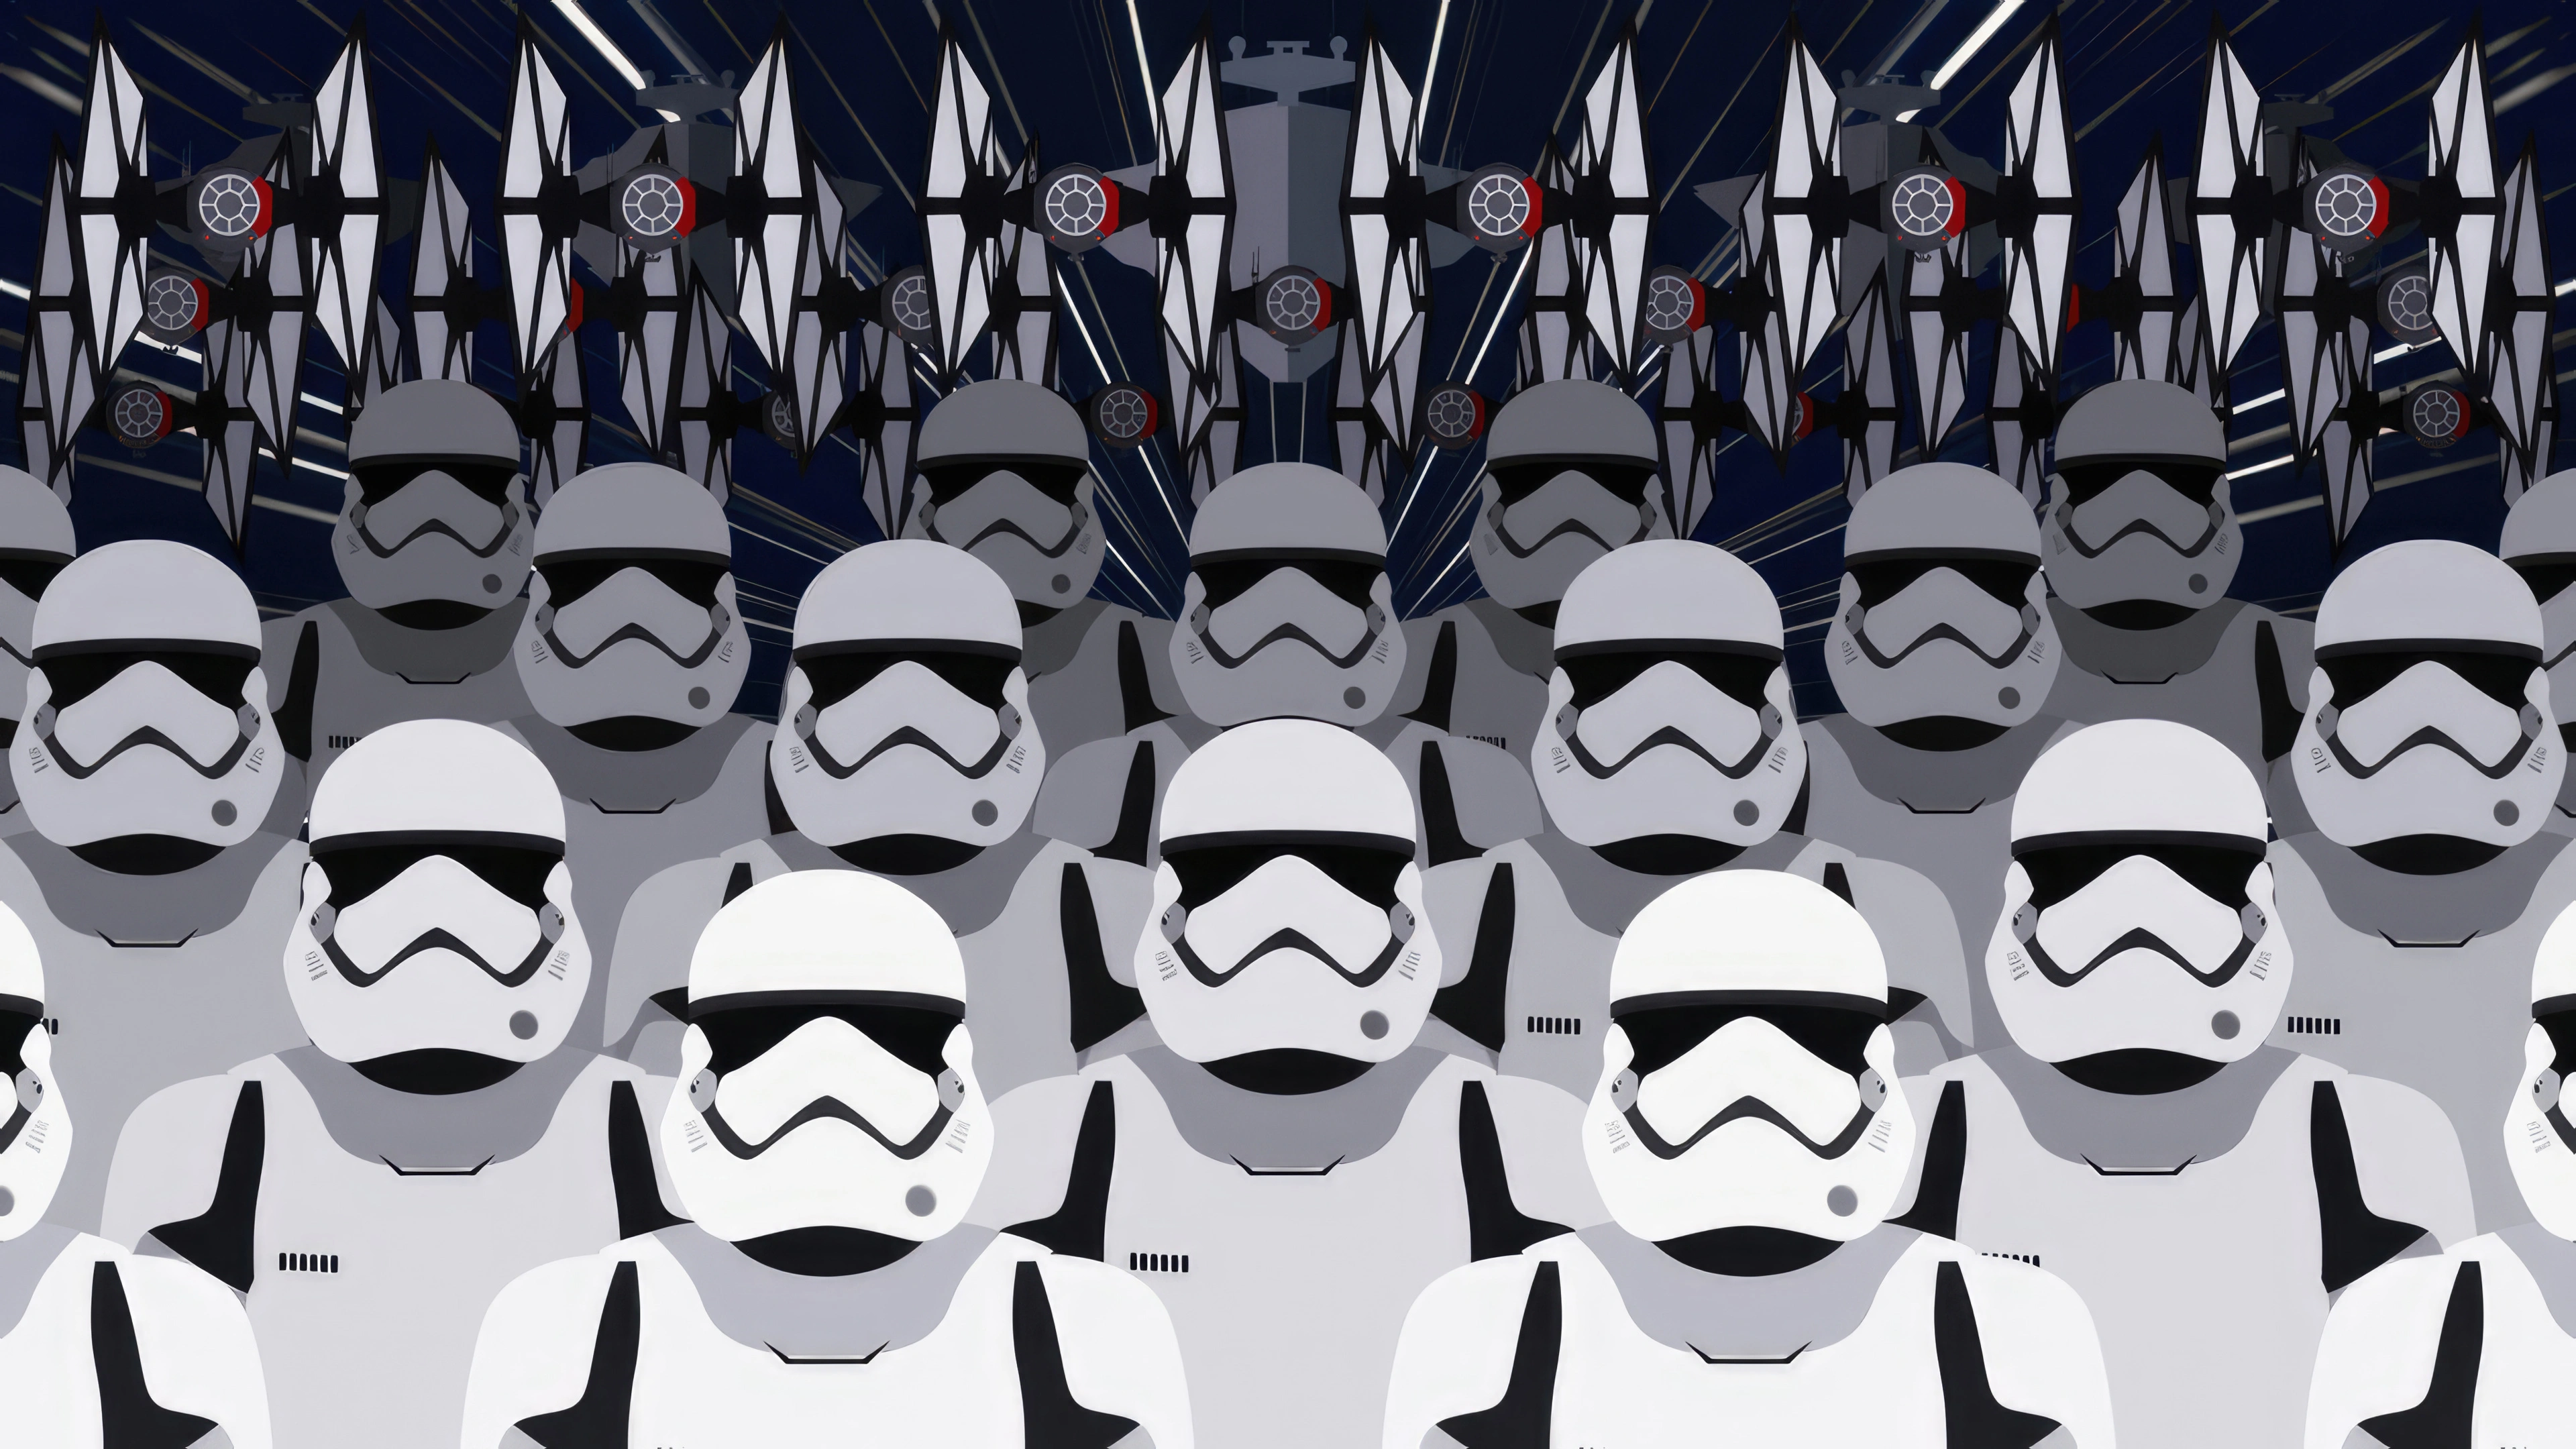 stormtroopers army m0.jpg